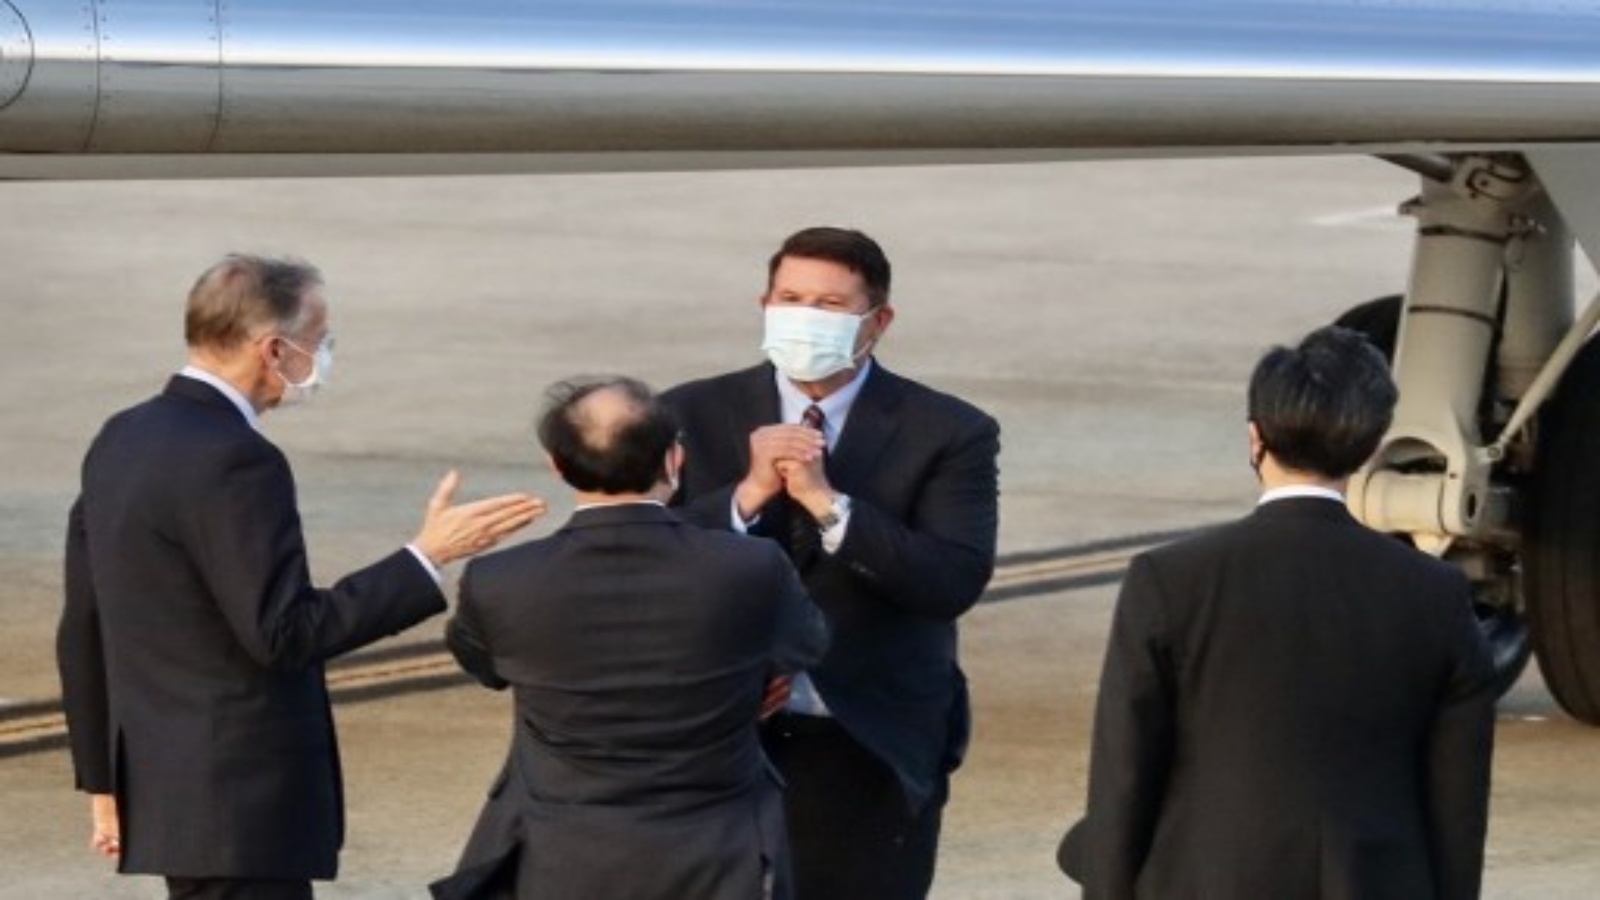 كيث كراش وكيل وزارة الخارجية الأمريكية للنمو الاقتصادي والطاقة والبيئة ، يشير بعد هبوطه في مطار سونغشان في تايبيه في 17 سبتمبر 2020